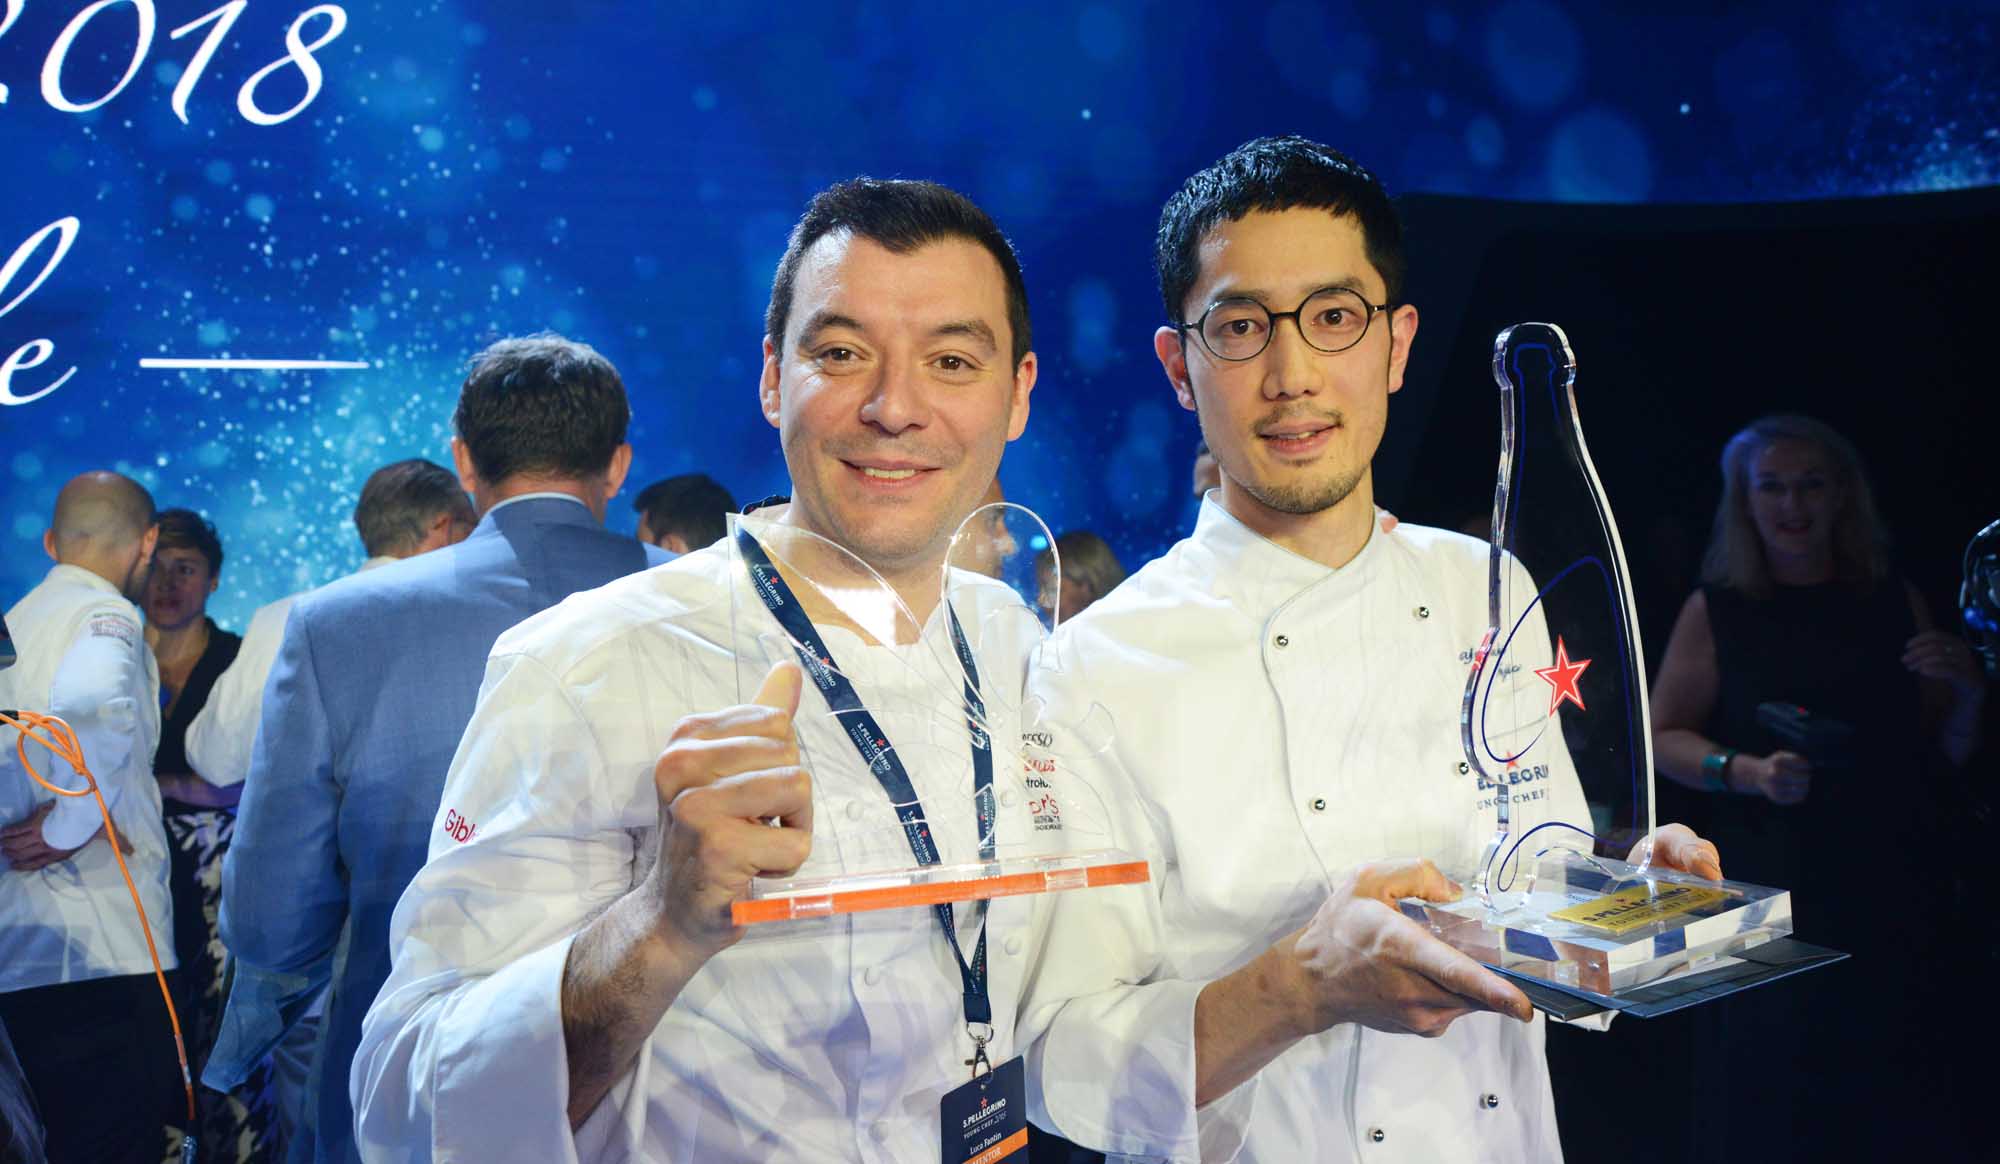 国際料理コンクール「サンペレグリノ・ヤングシェフ」で優勝した藤尾さんとルカ・シェフ